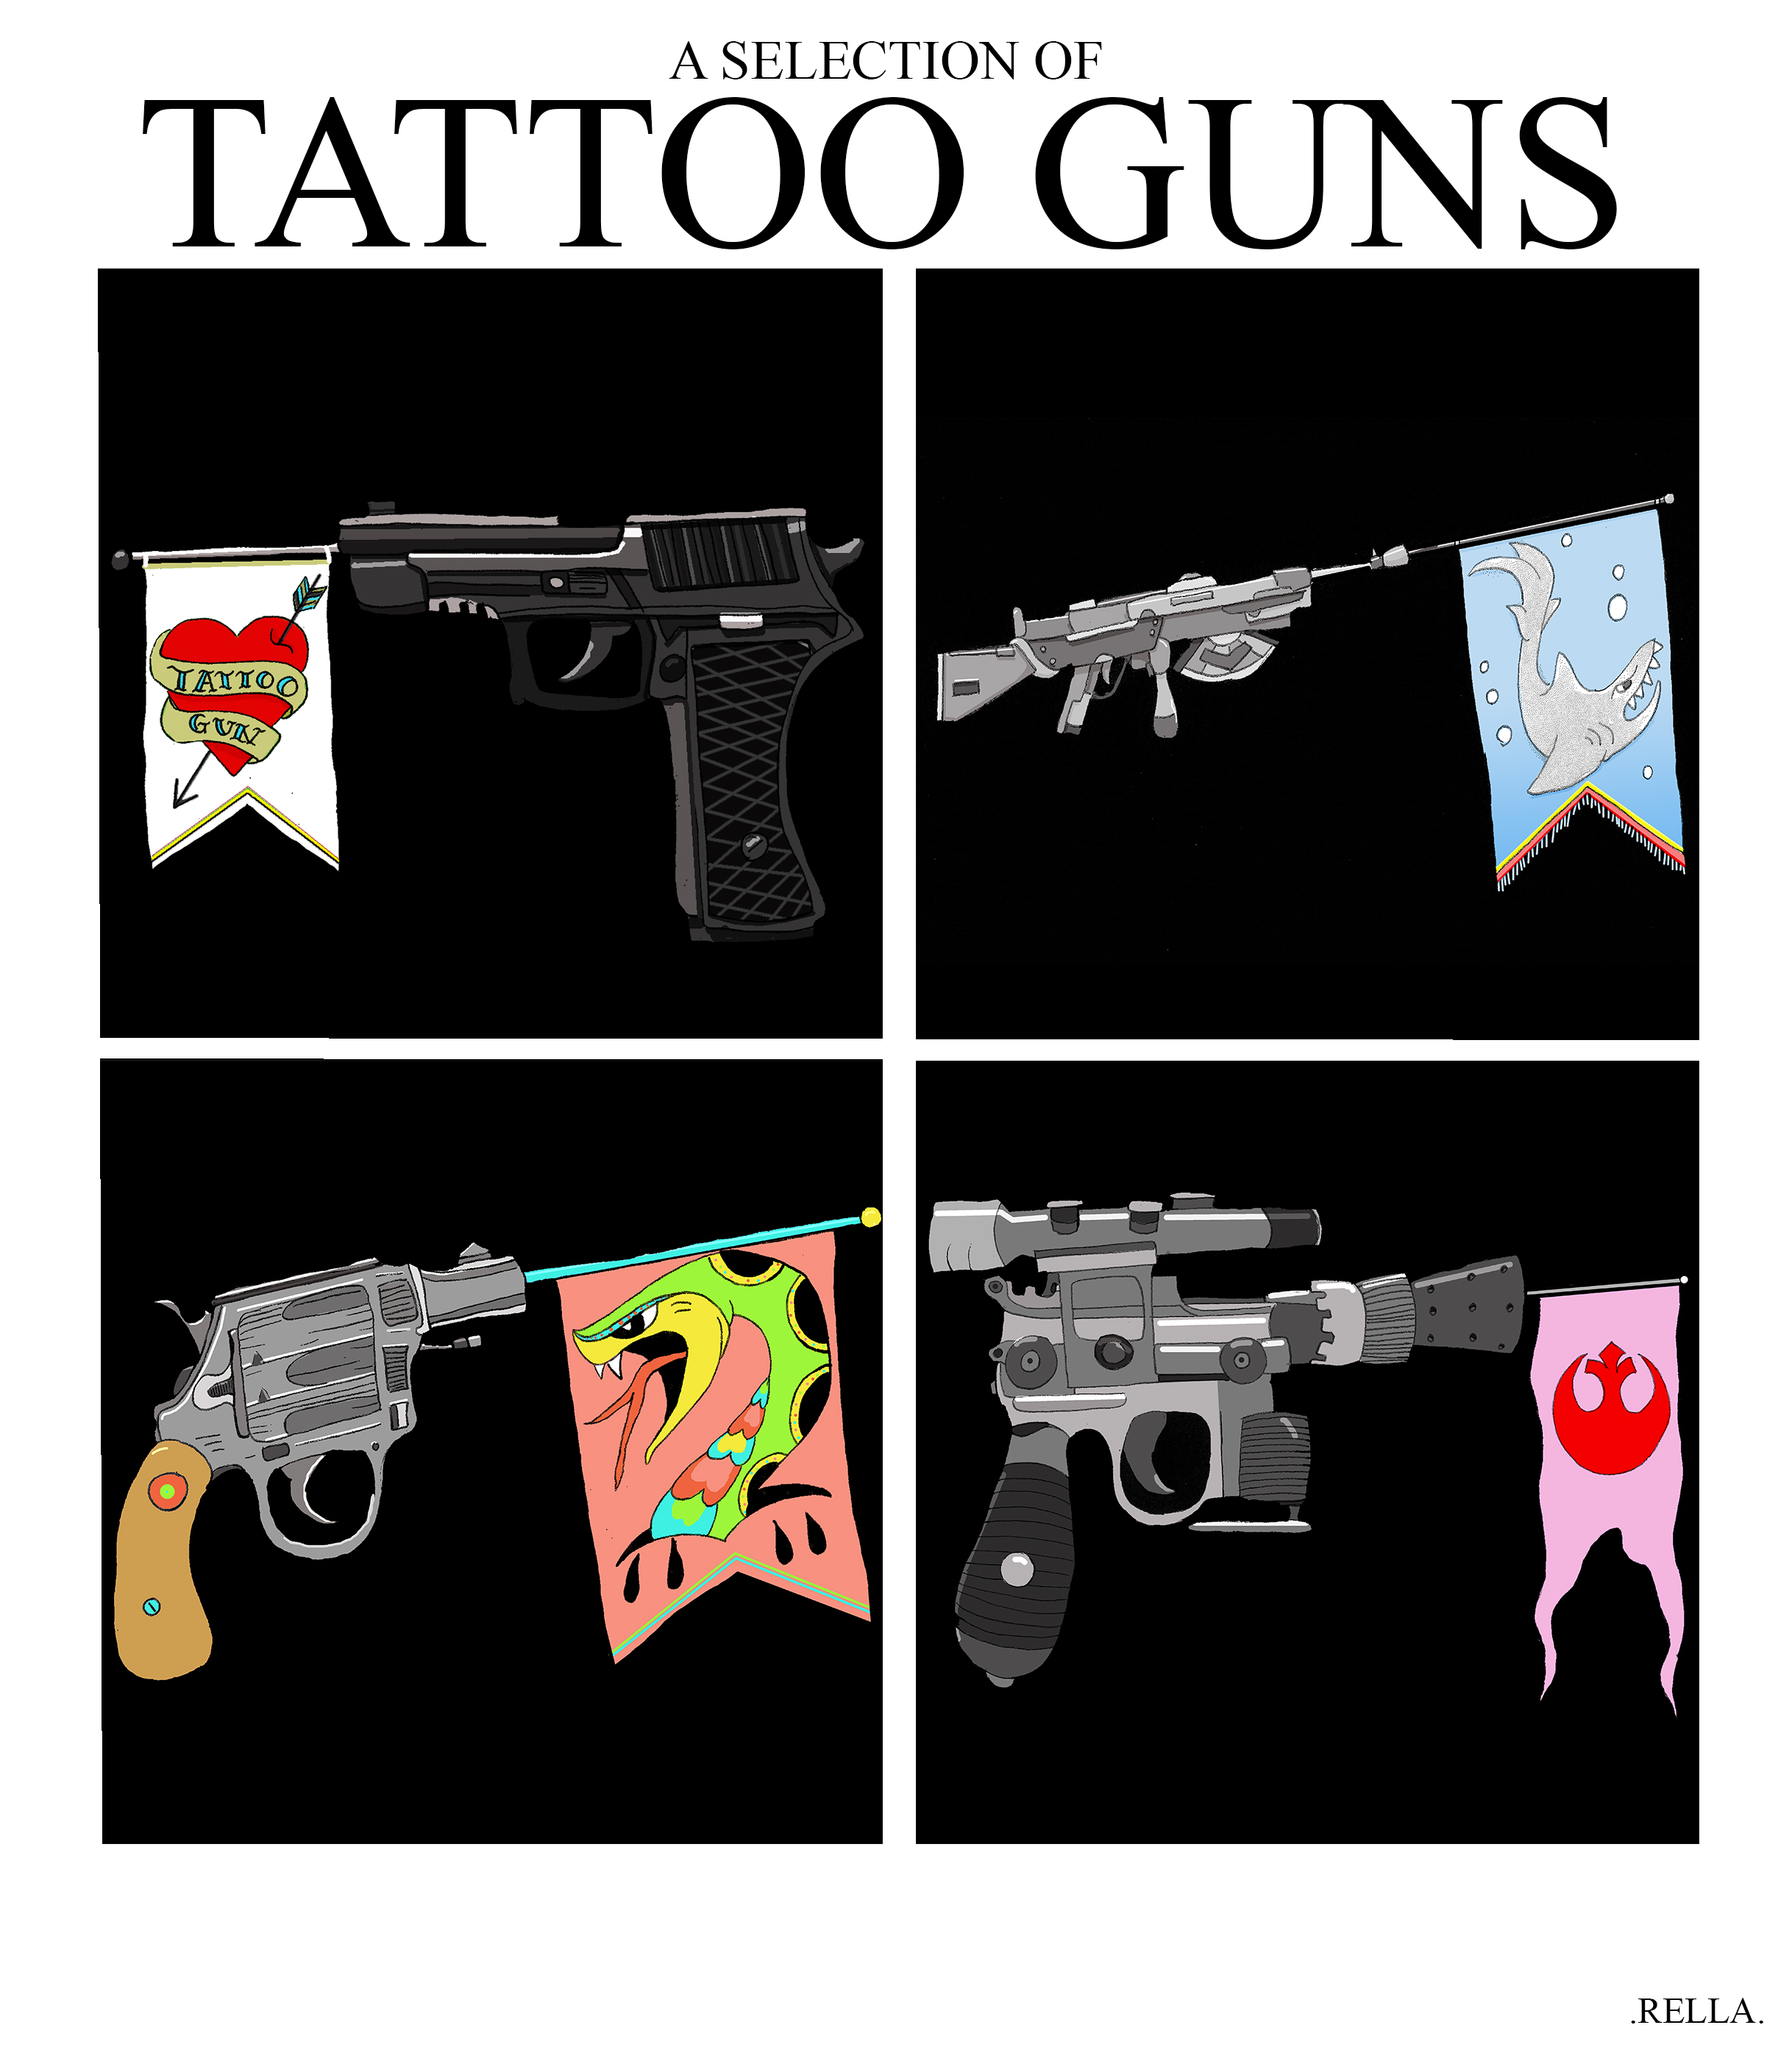 Tattoo guns